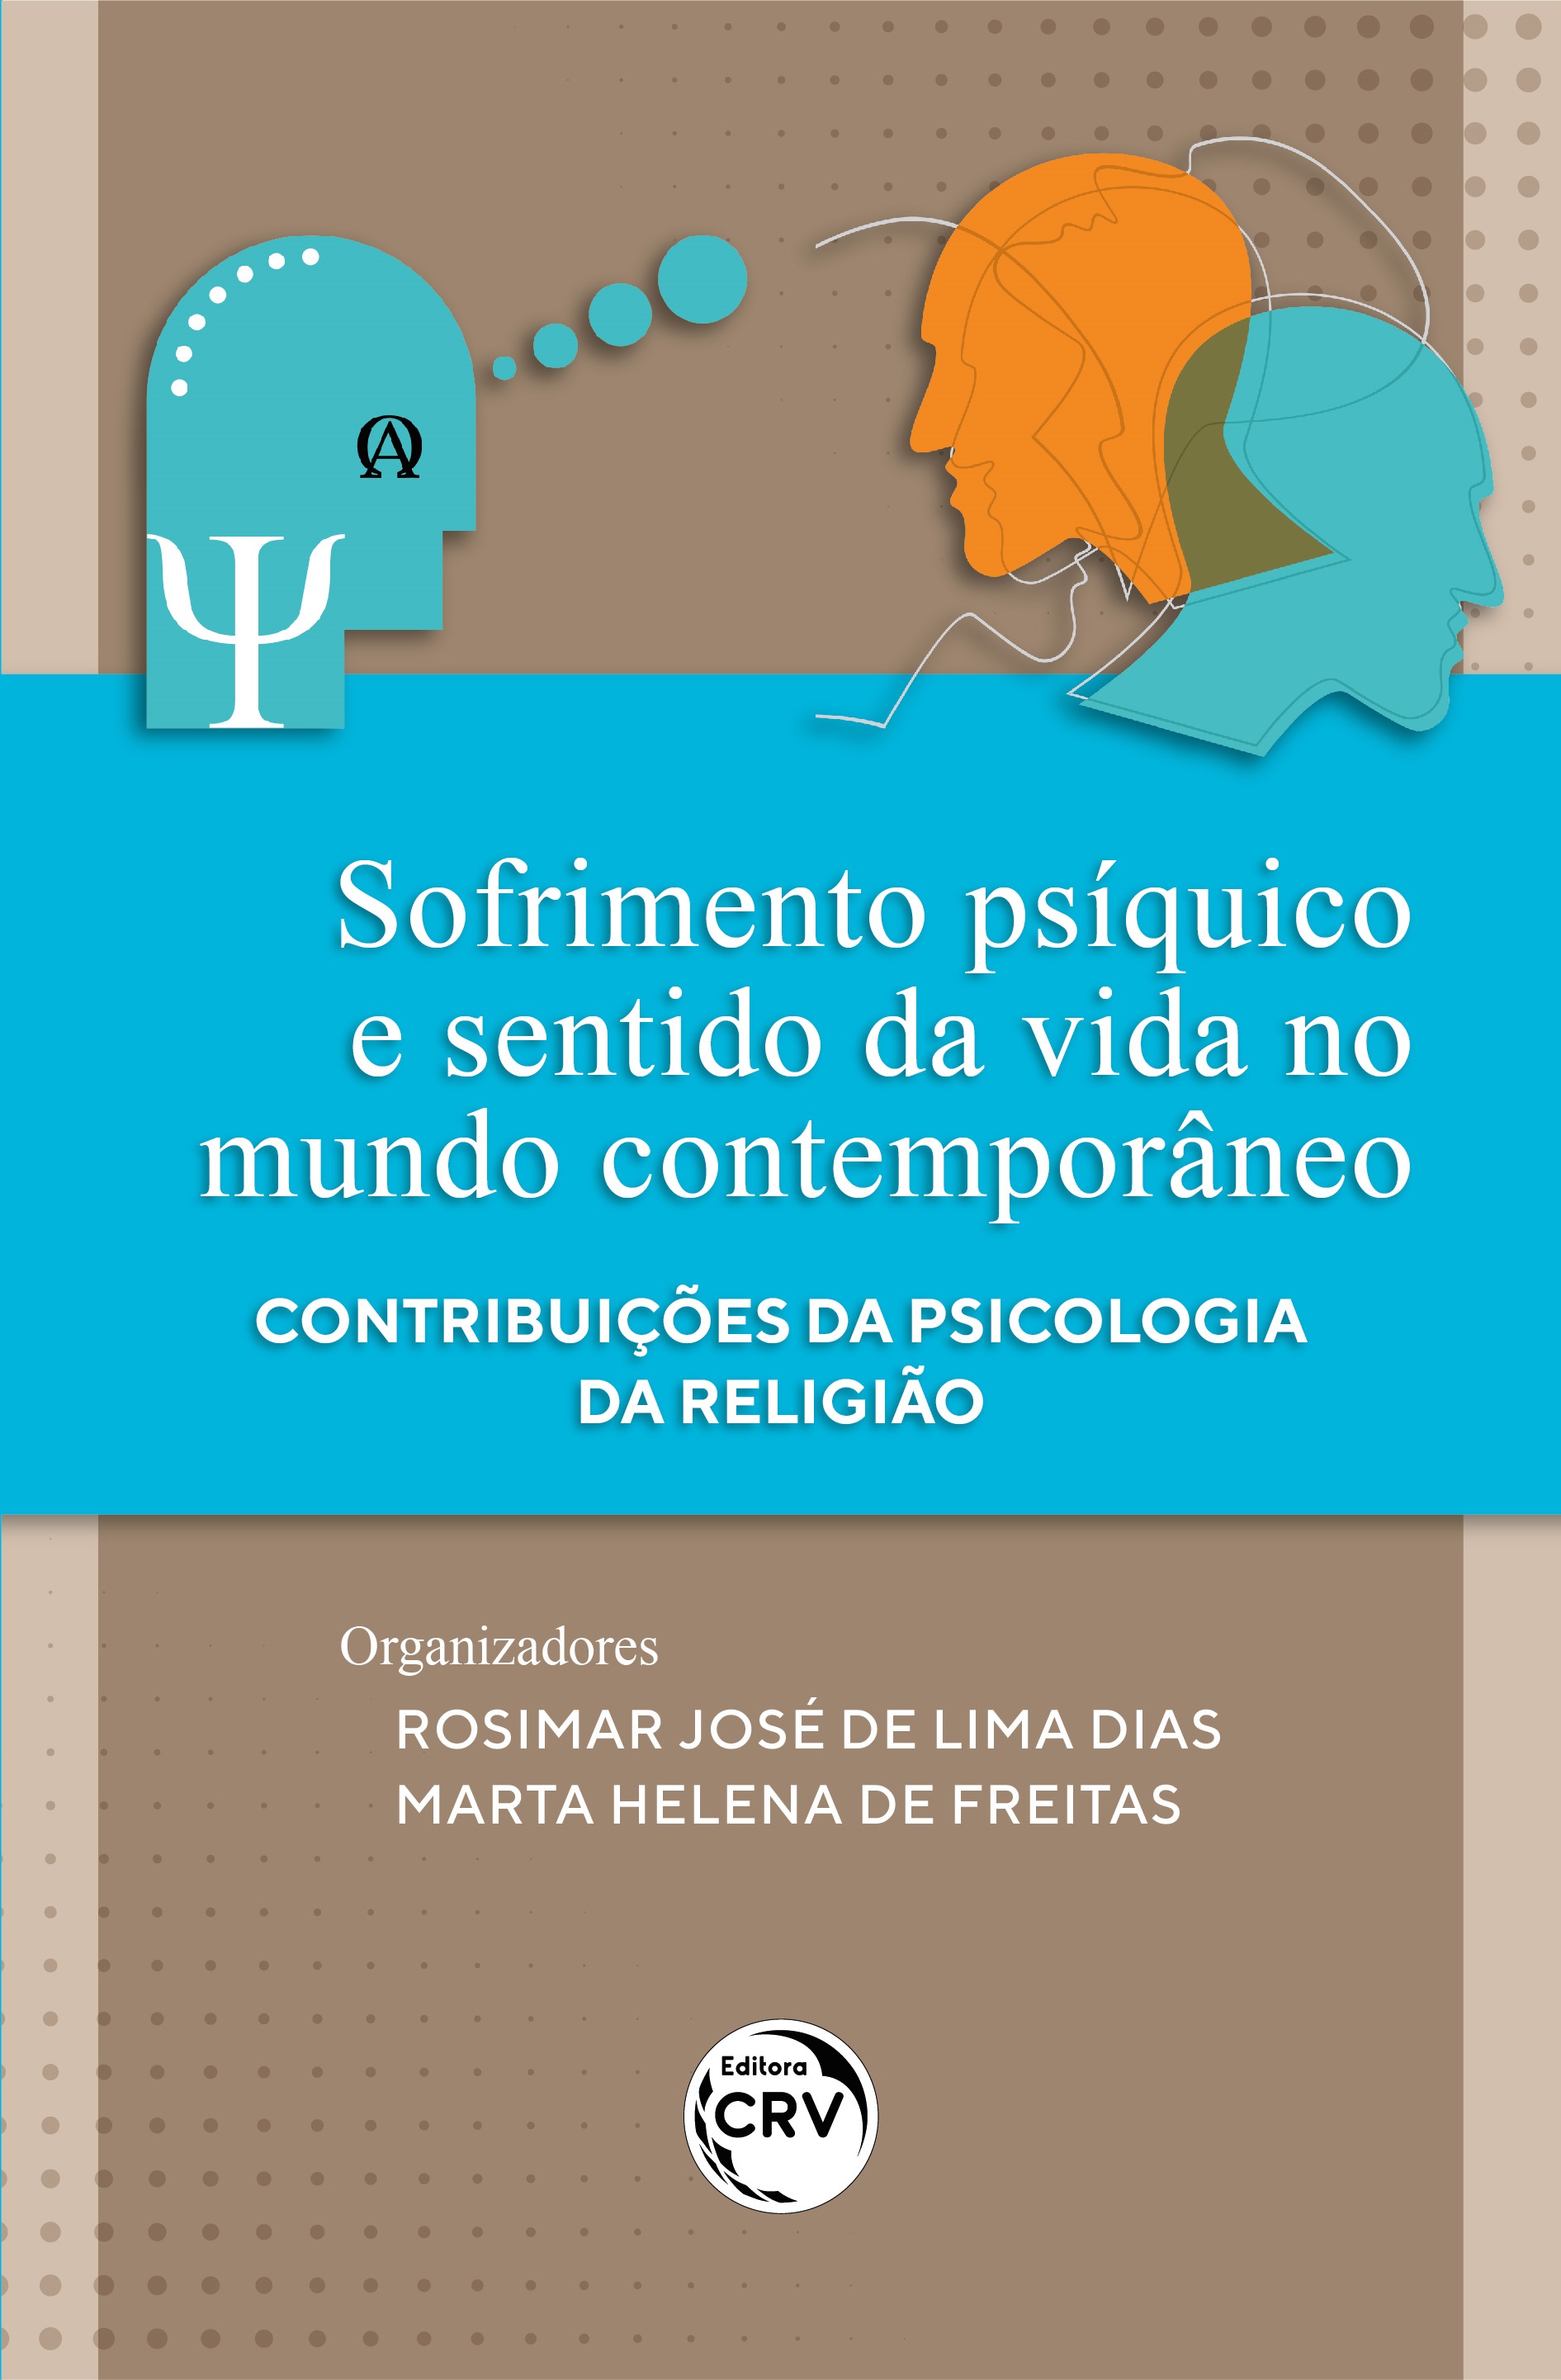 Marilia Ferreira Teixeira - Estagiária de psicologia - Grupo